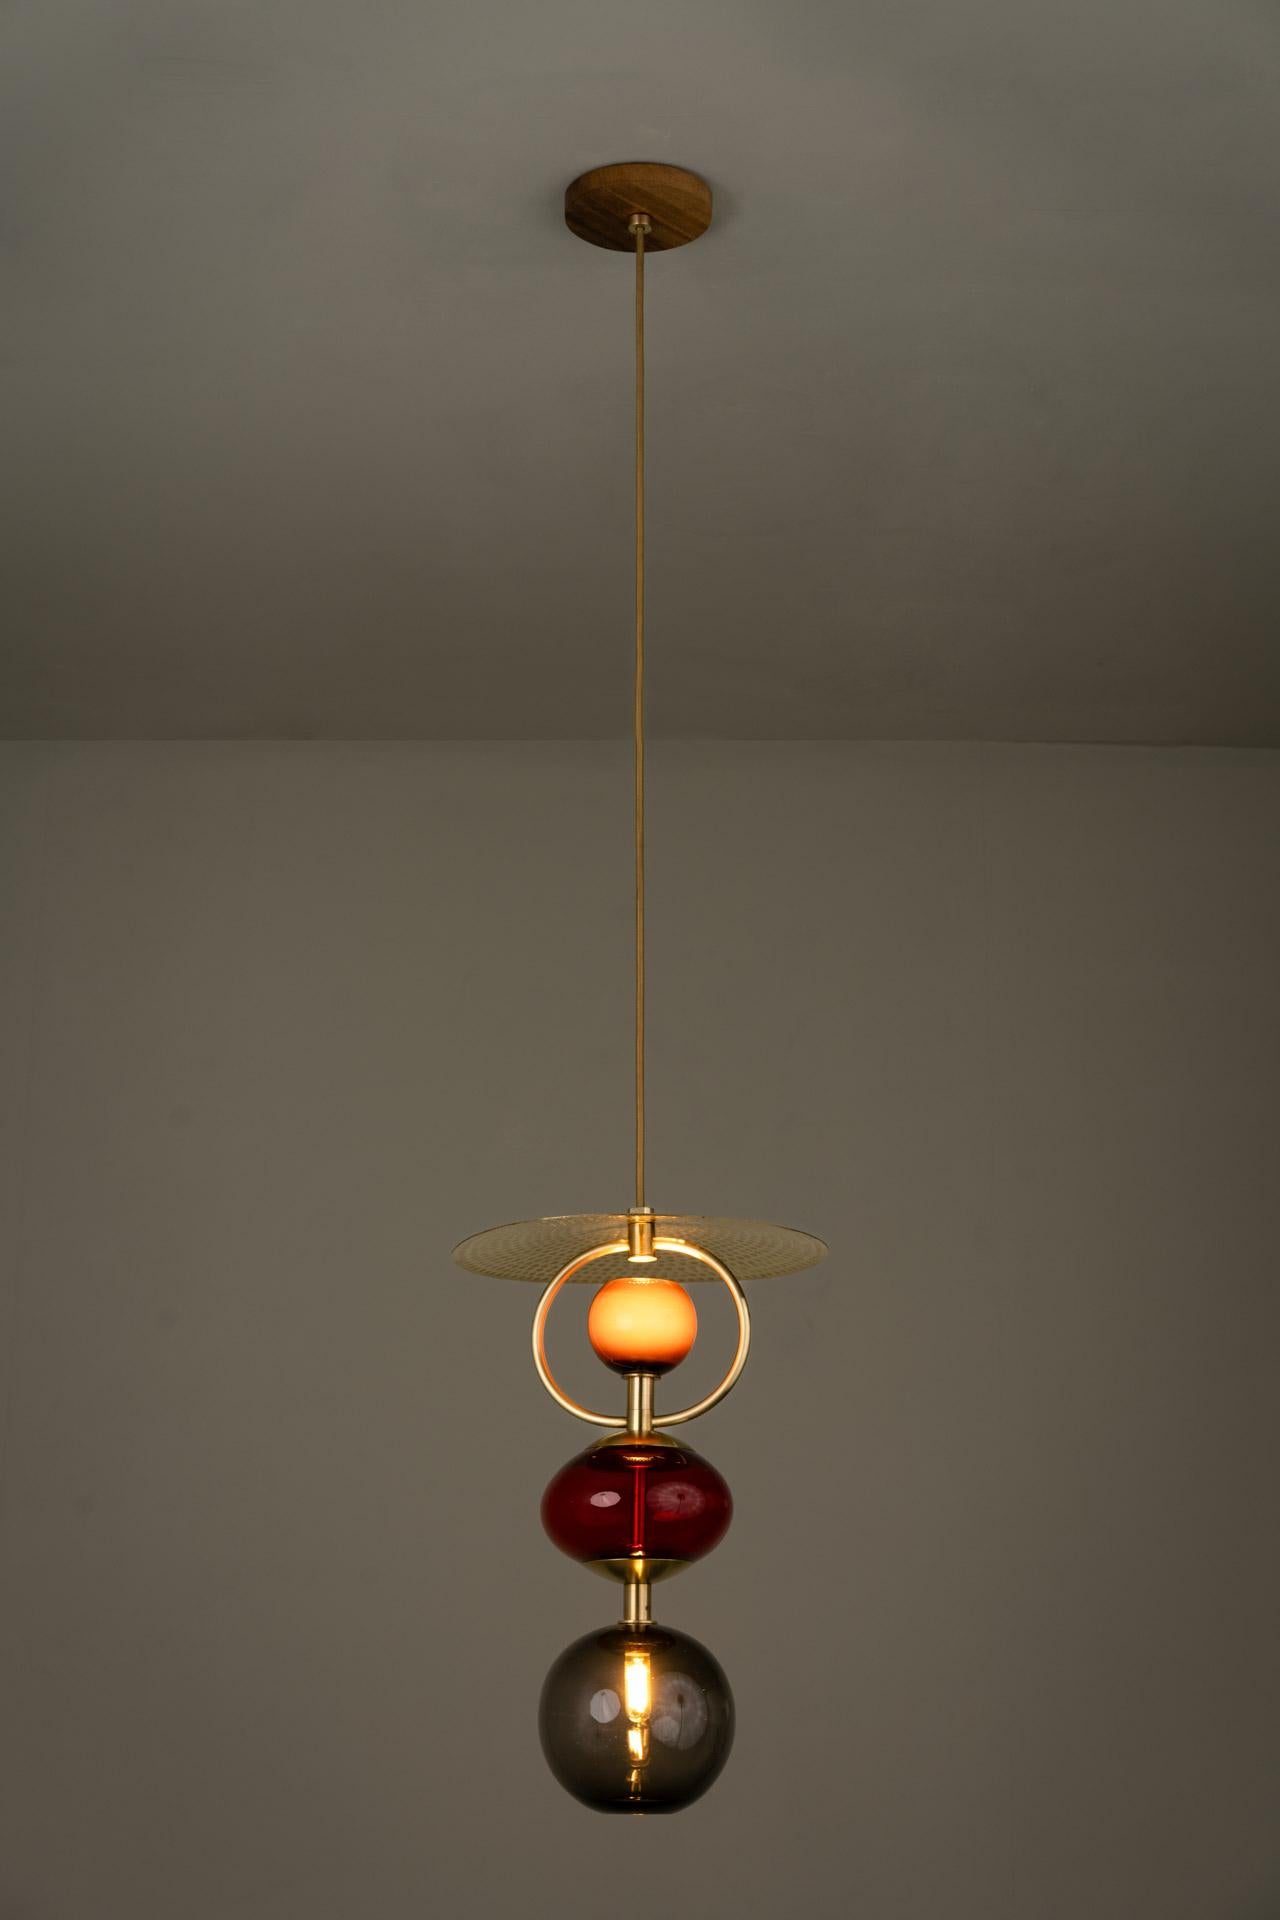 Die Pendelleuchte VITRA RED wurde von der mexikanischen Künstlerin Isabel Moncada für die Collection'S Atomic entworfen.

Die Faszination, die das Licht durch die Farben des Glases erzeugt, die geschwungene Silhouette und das handgeschmiedete